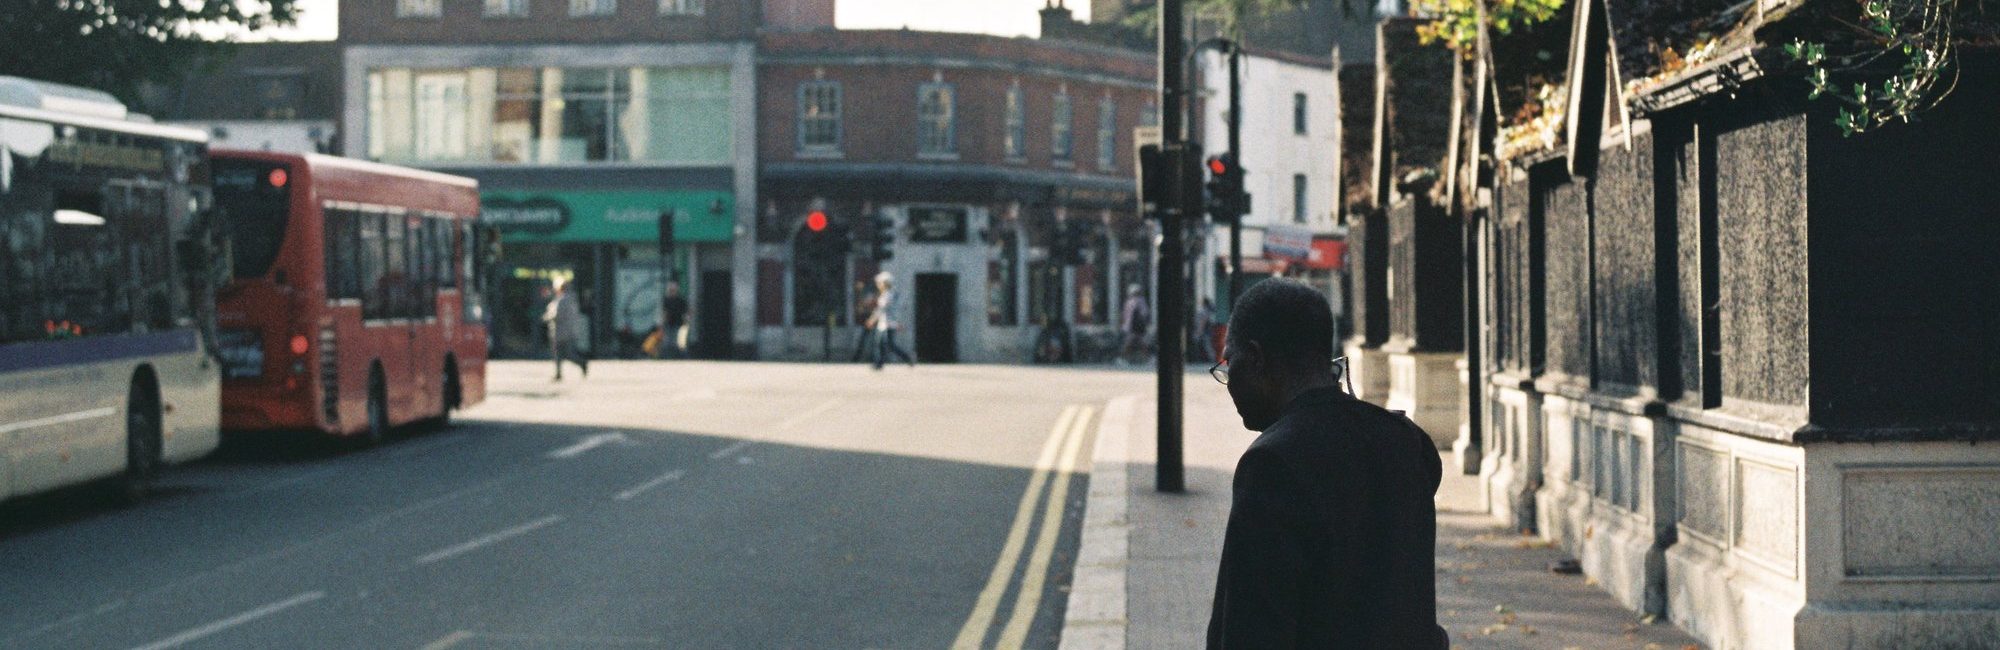 A man waiting at a bus stop